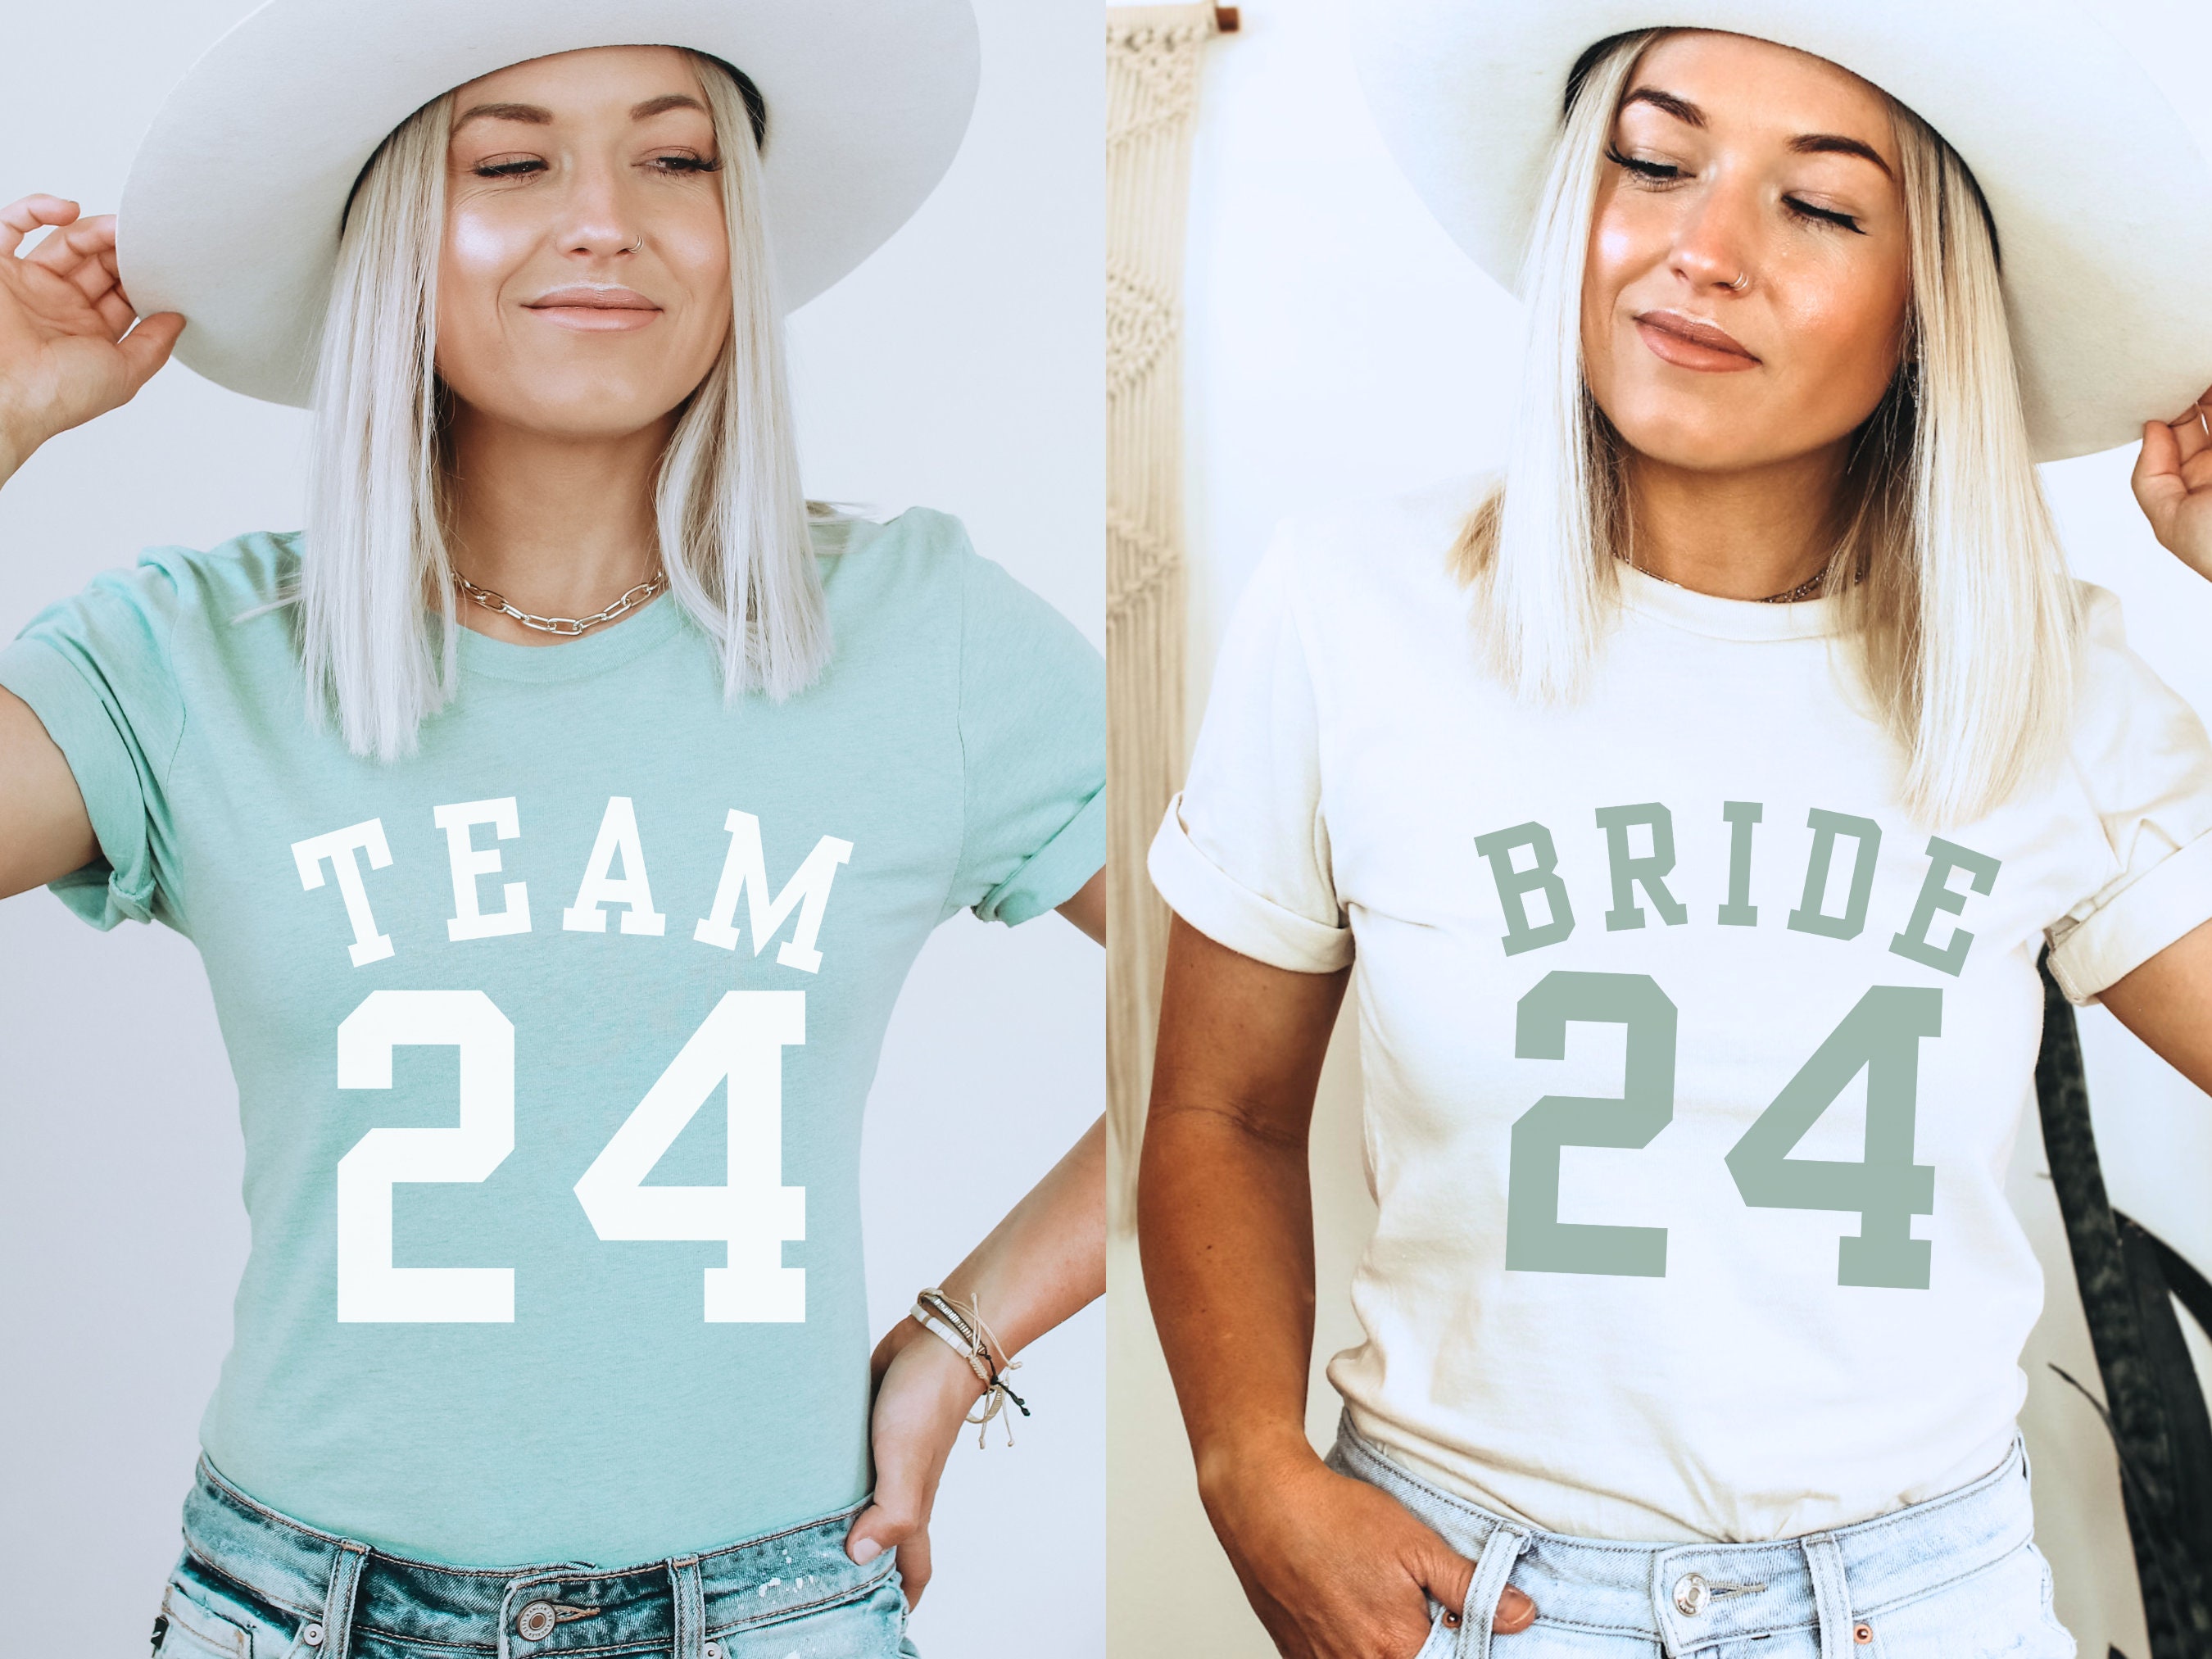 Custom T-Shirts for Team Bride Softball! - Shirt Design Ideas